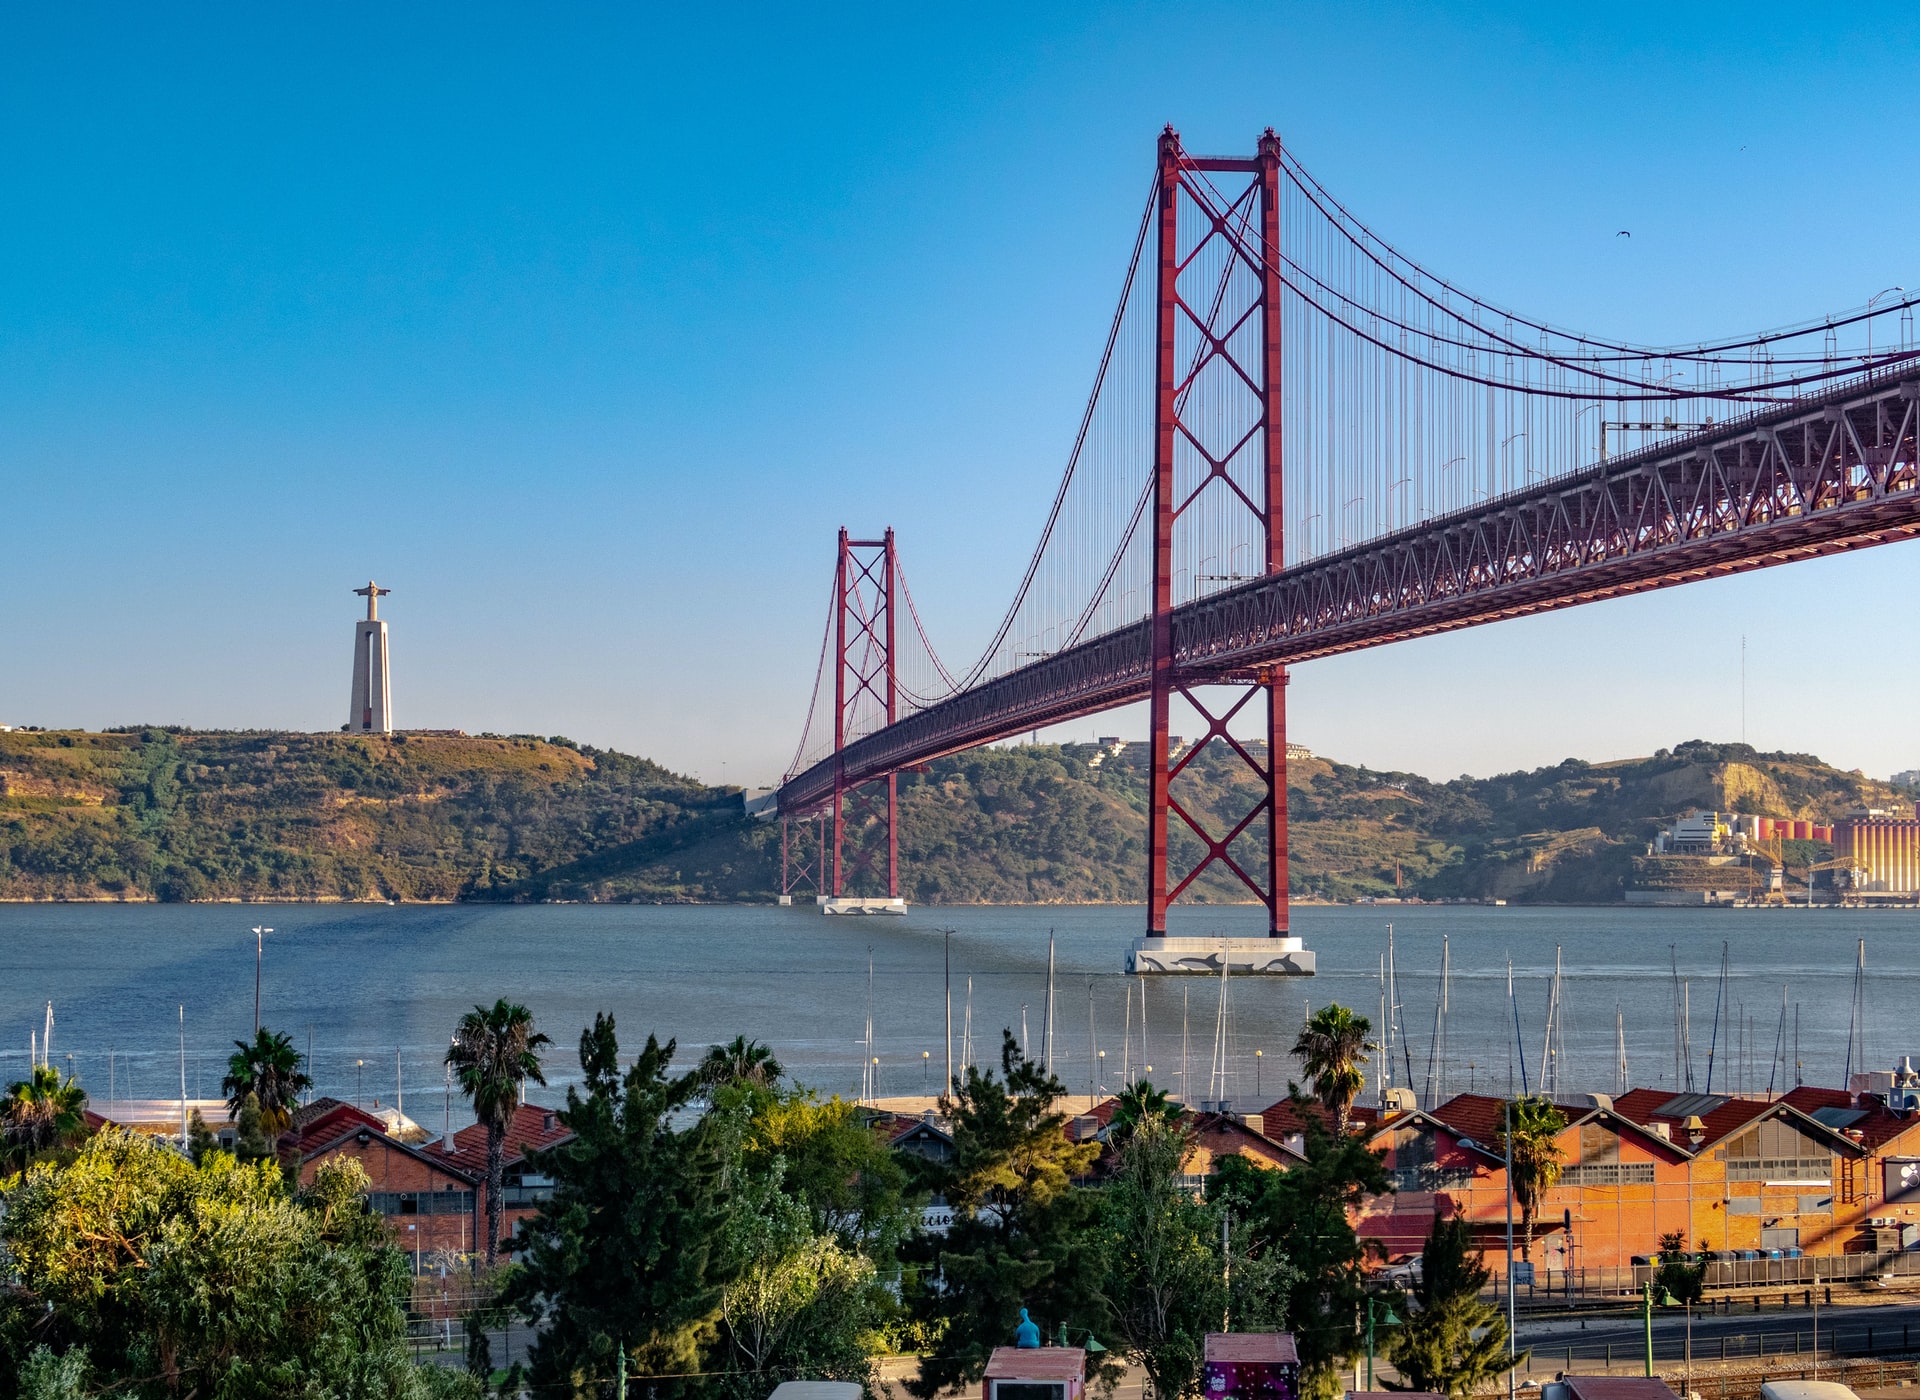 Bild von der Brücke 25 de Abril in Lissabon, Portugal, mit Blick über den Tejo auf die Statue Cristo Rei